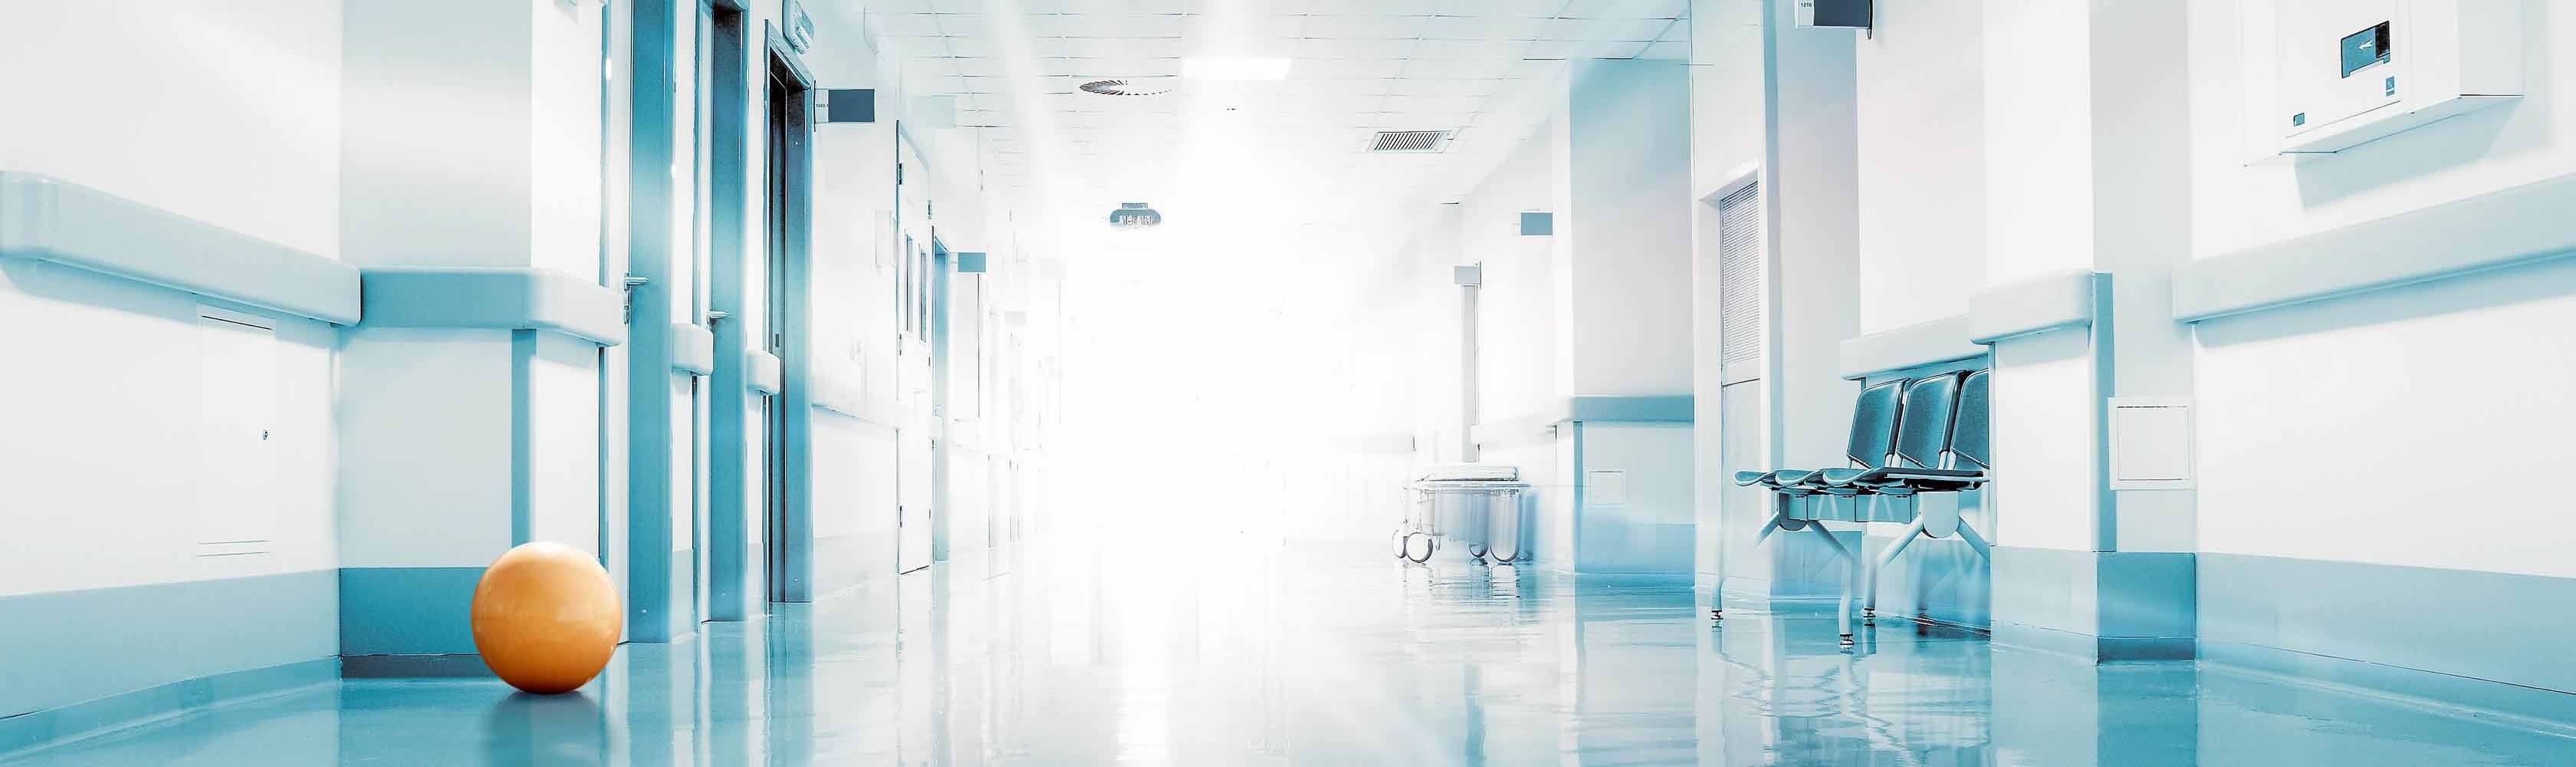 L'évaluation des hôpitaux sous l'angle de la qualité de soins